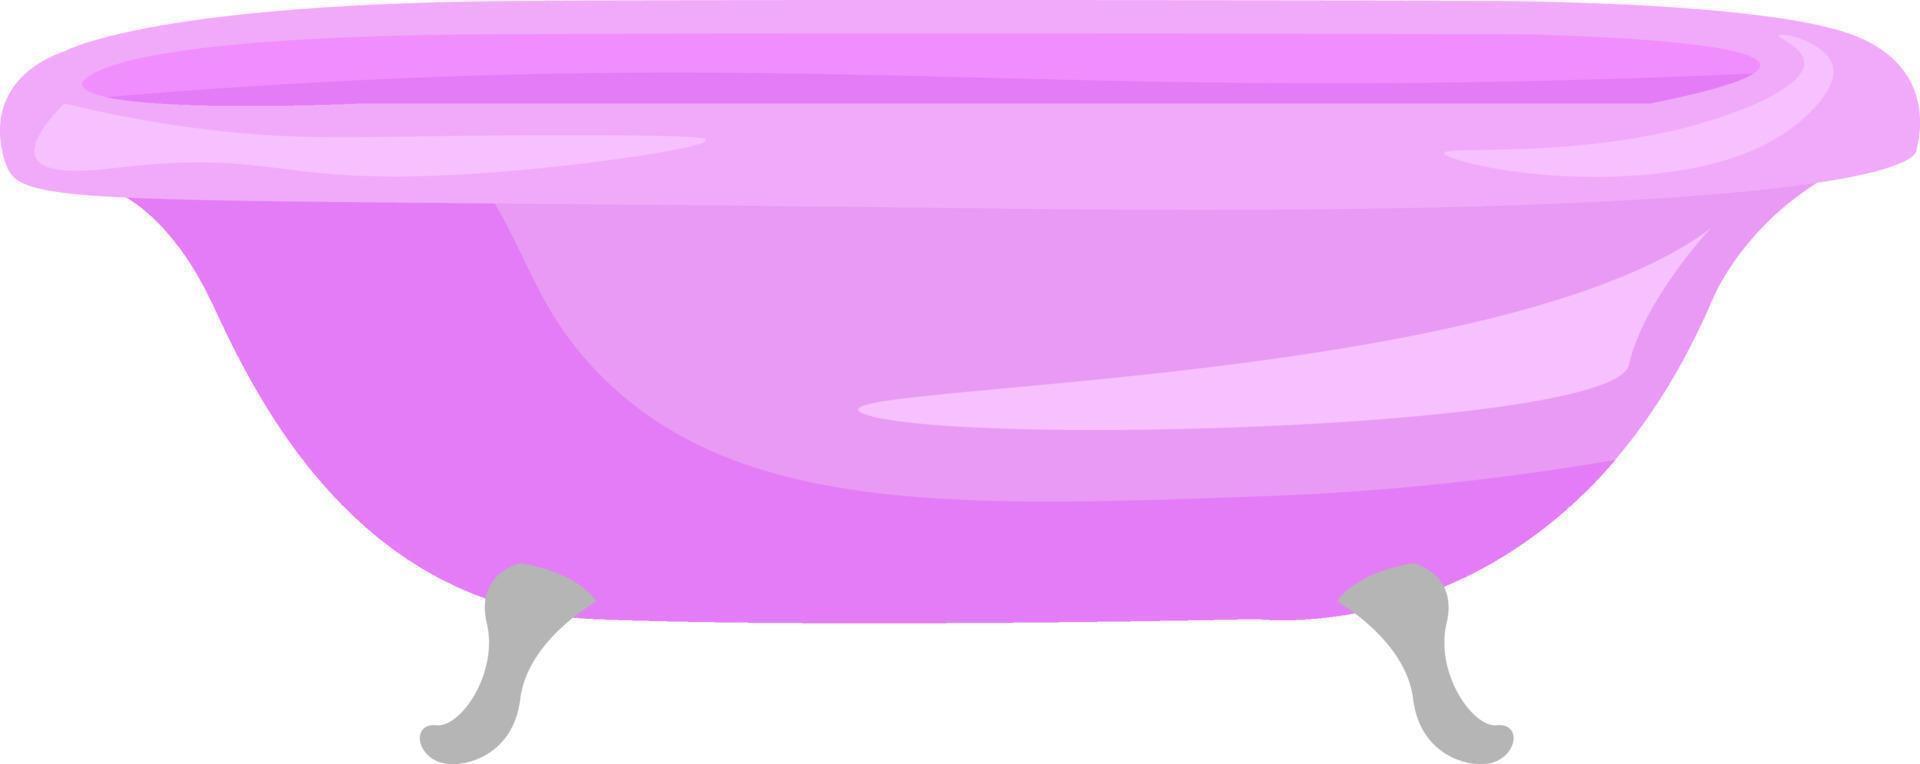 Bañera rosa, ilustración, vector sobre fondo blanco.